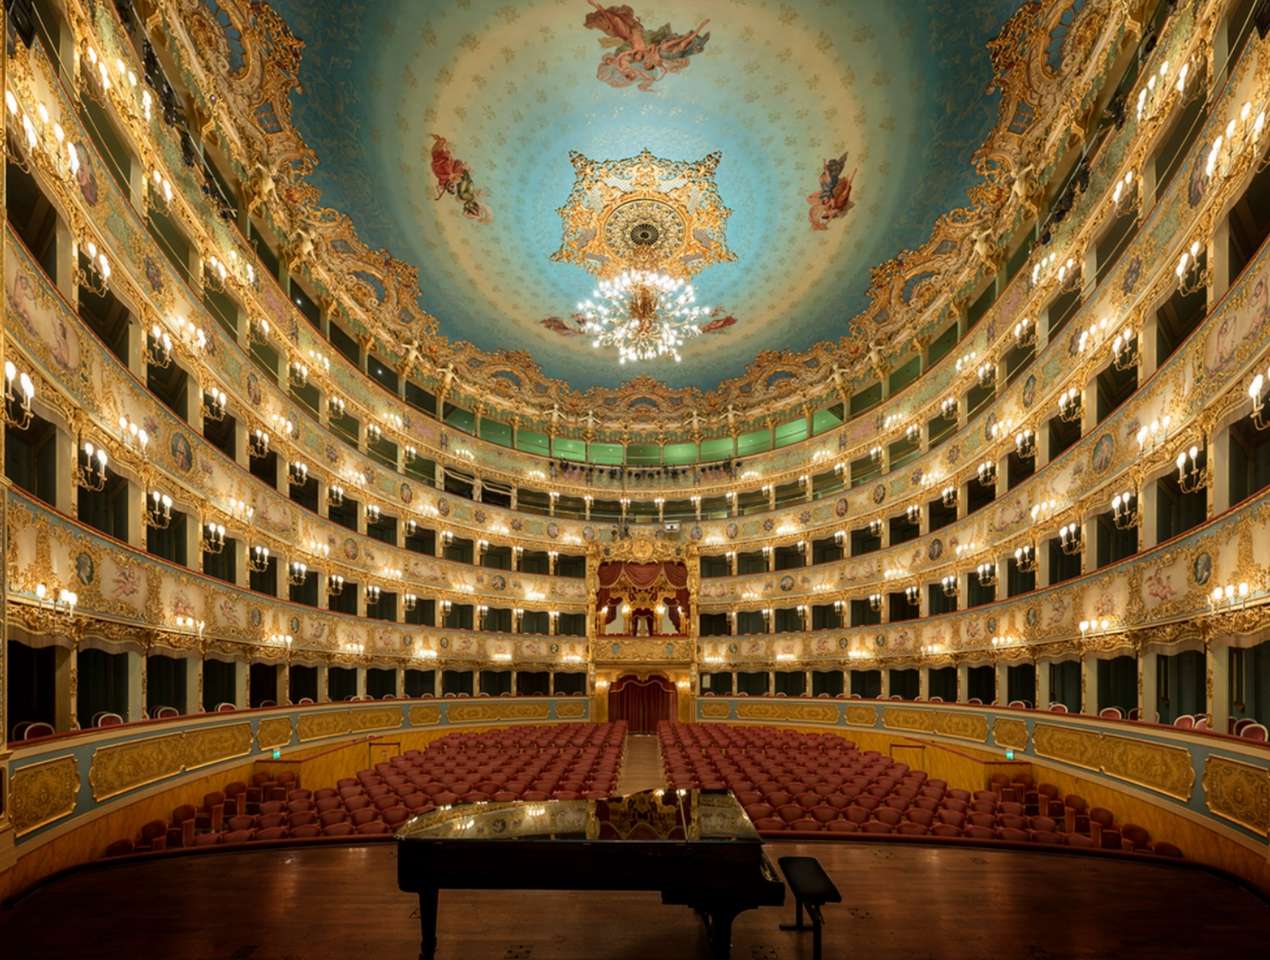 Teatro la fenice puzzle online from photo